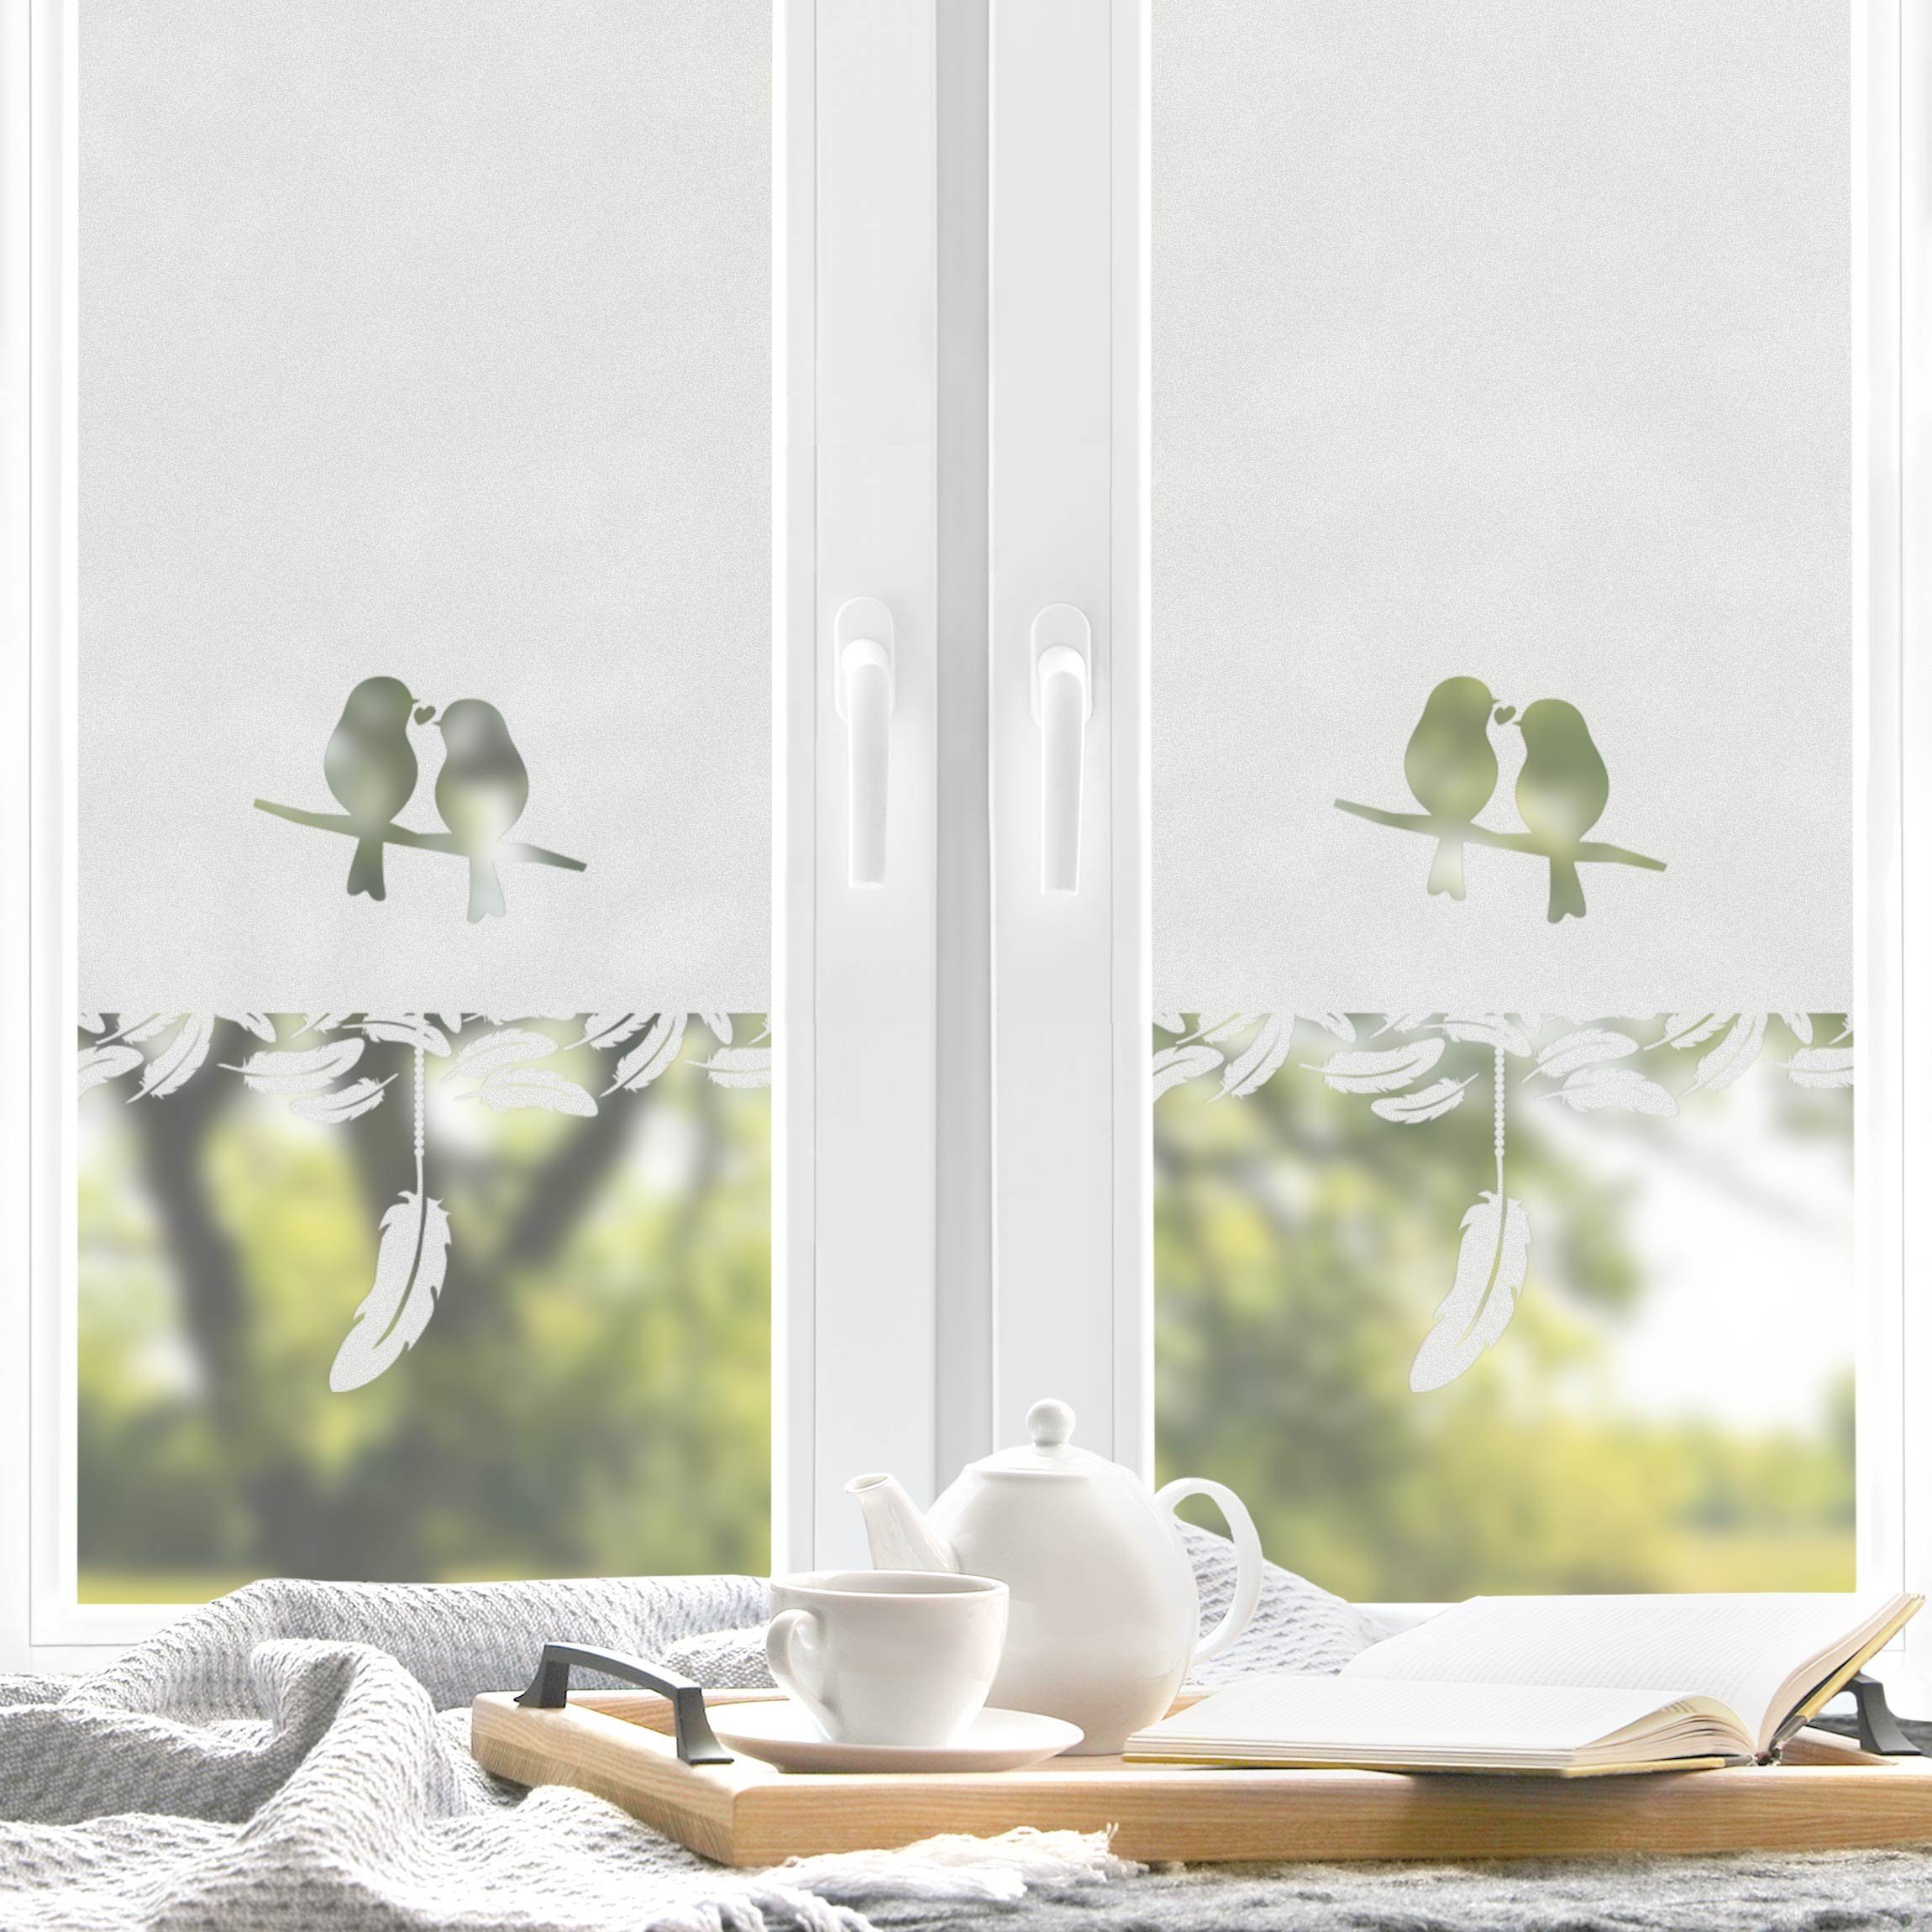 Randaco Sichtschutzfolie Bad Fenster Blickdicht Selbstklebend 3D